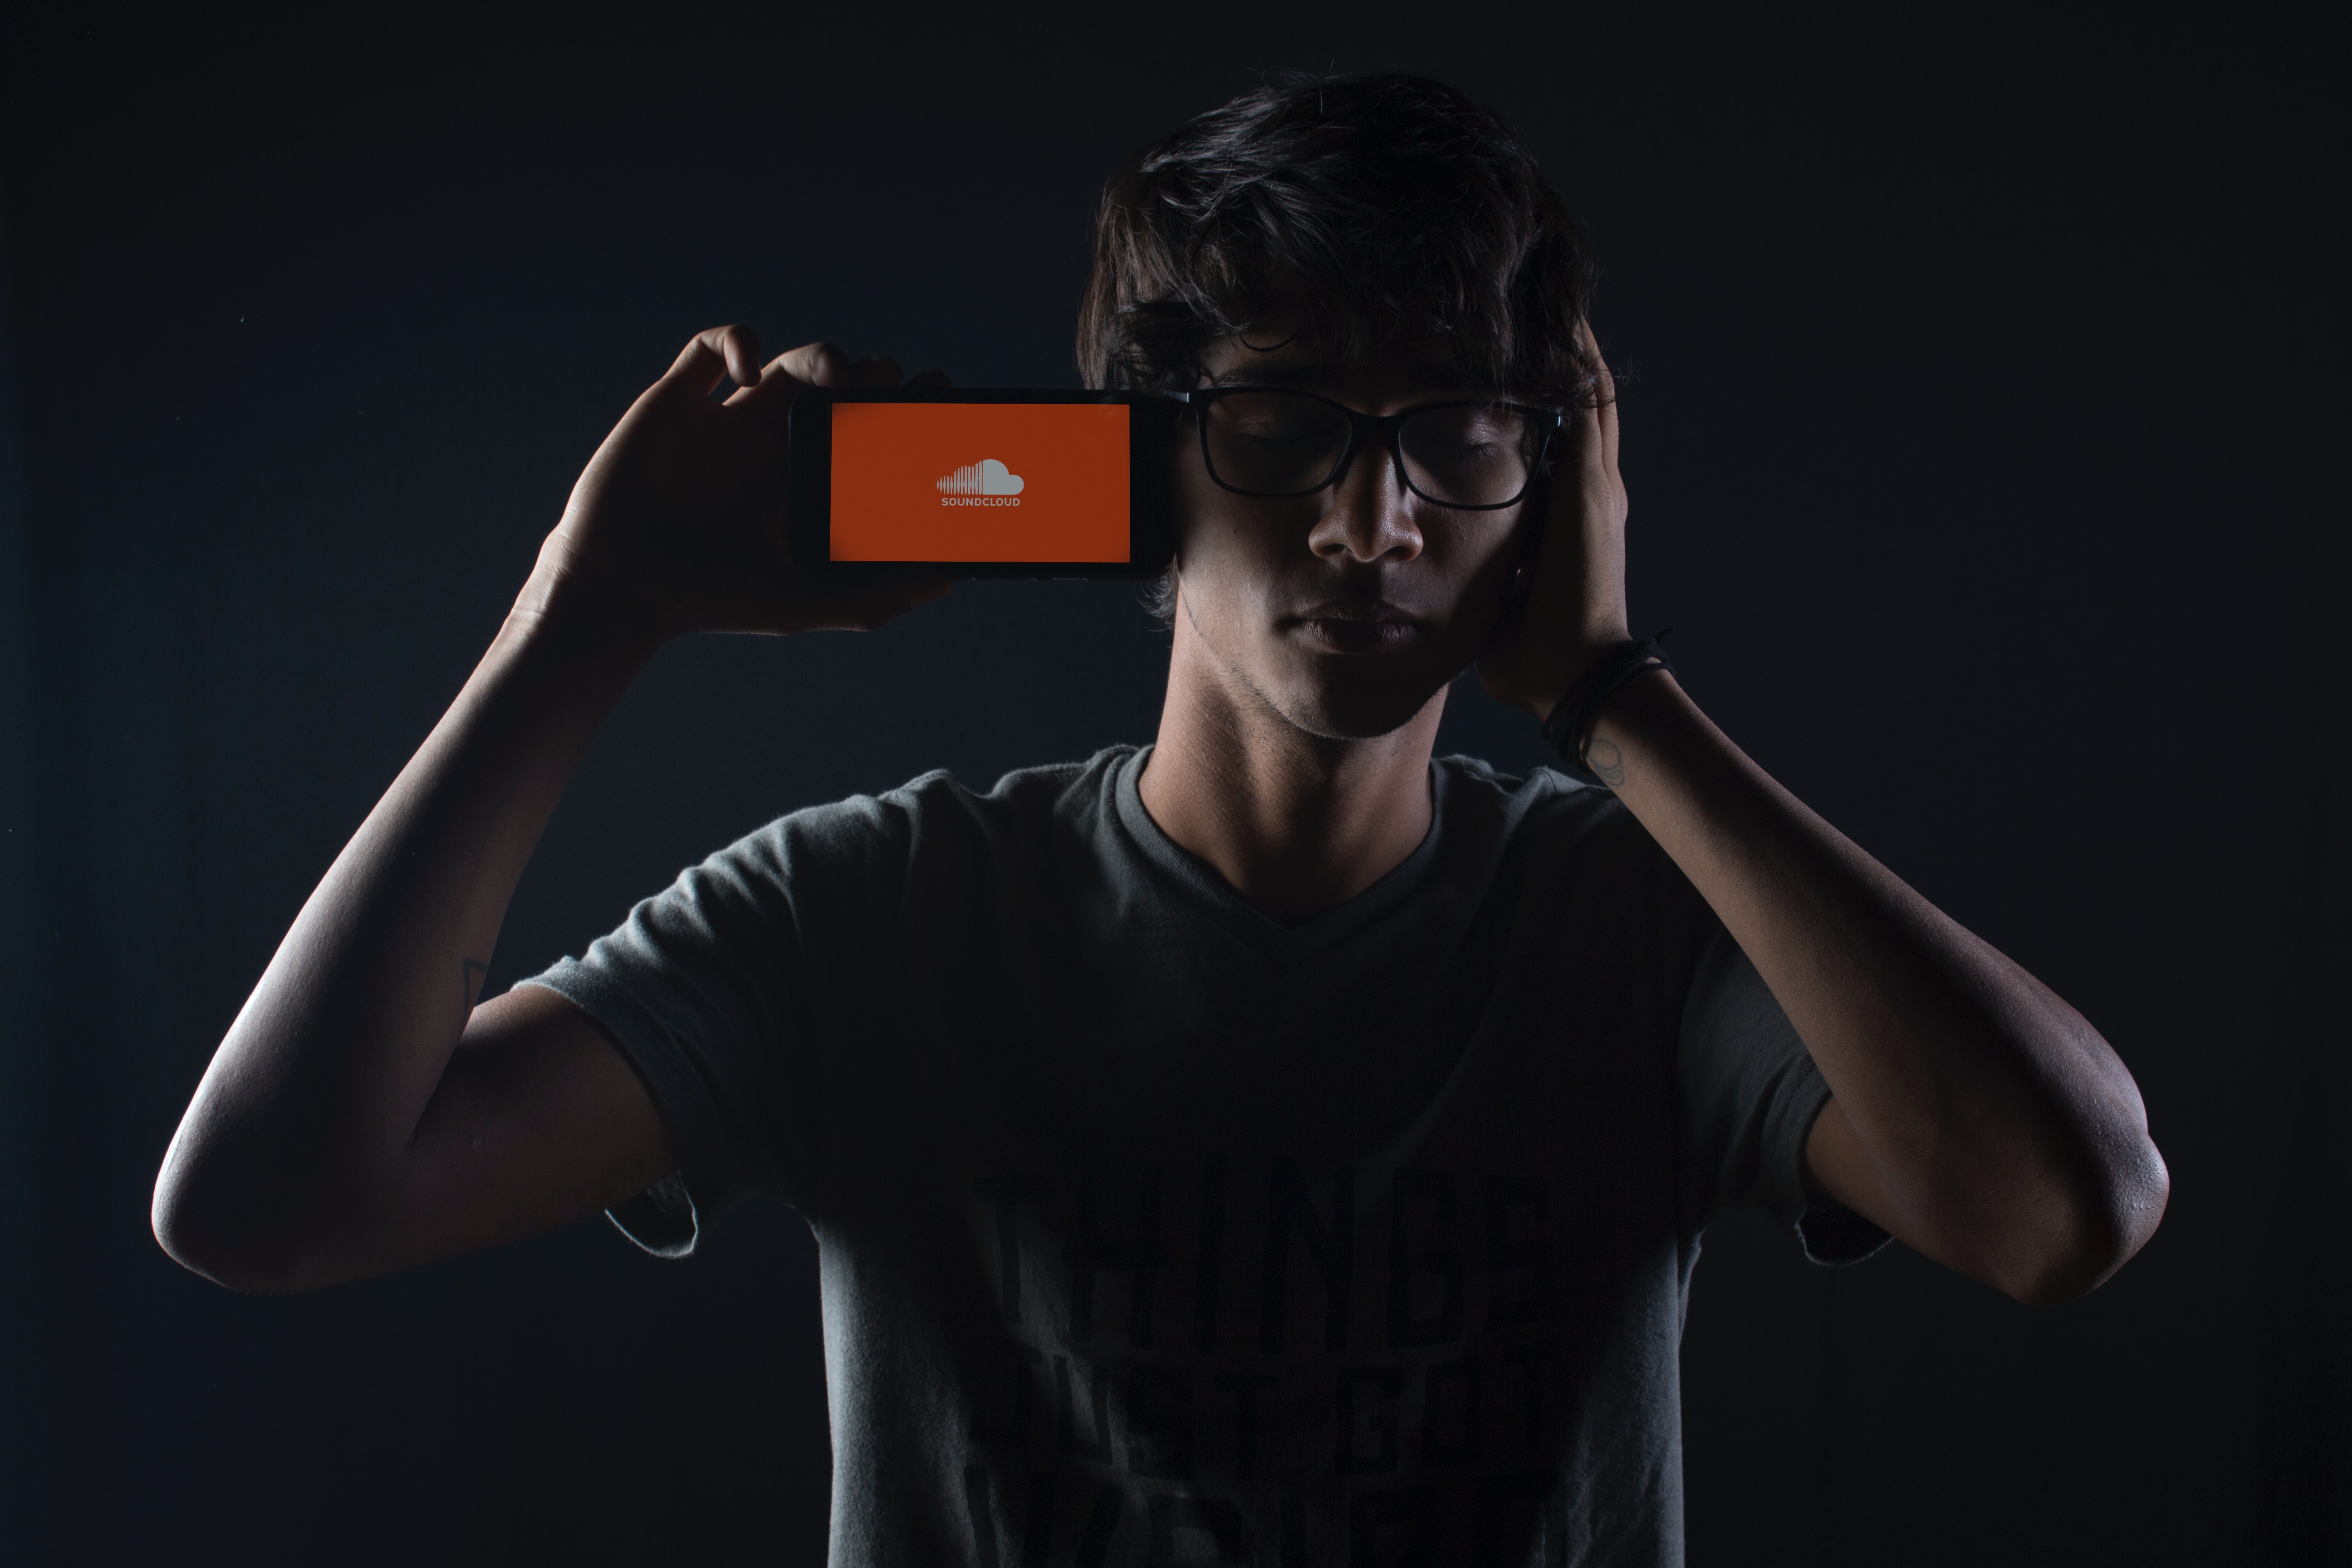 Роскомнадзор заблокировал SoundCloud за искажение «сущности» военной операции